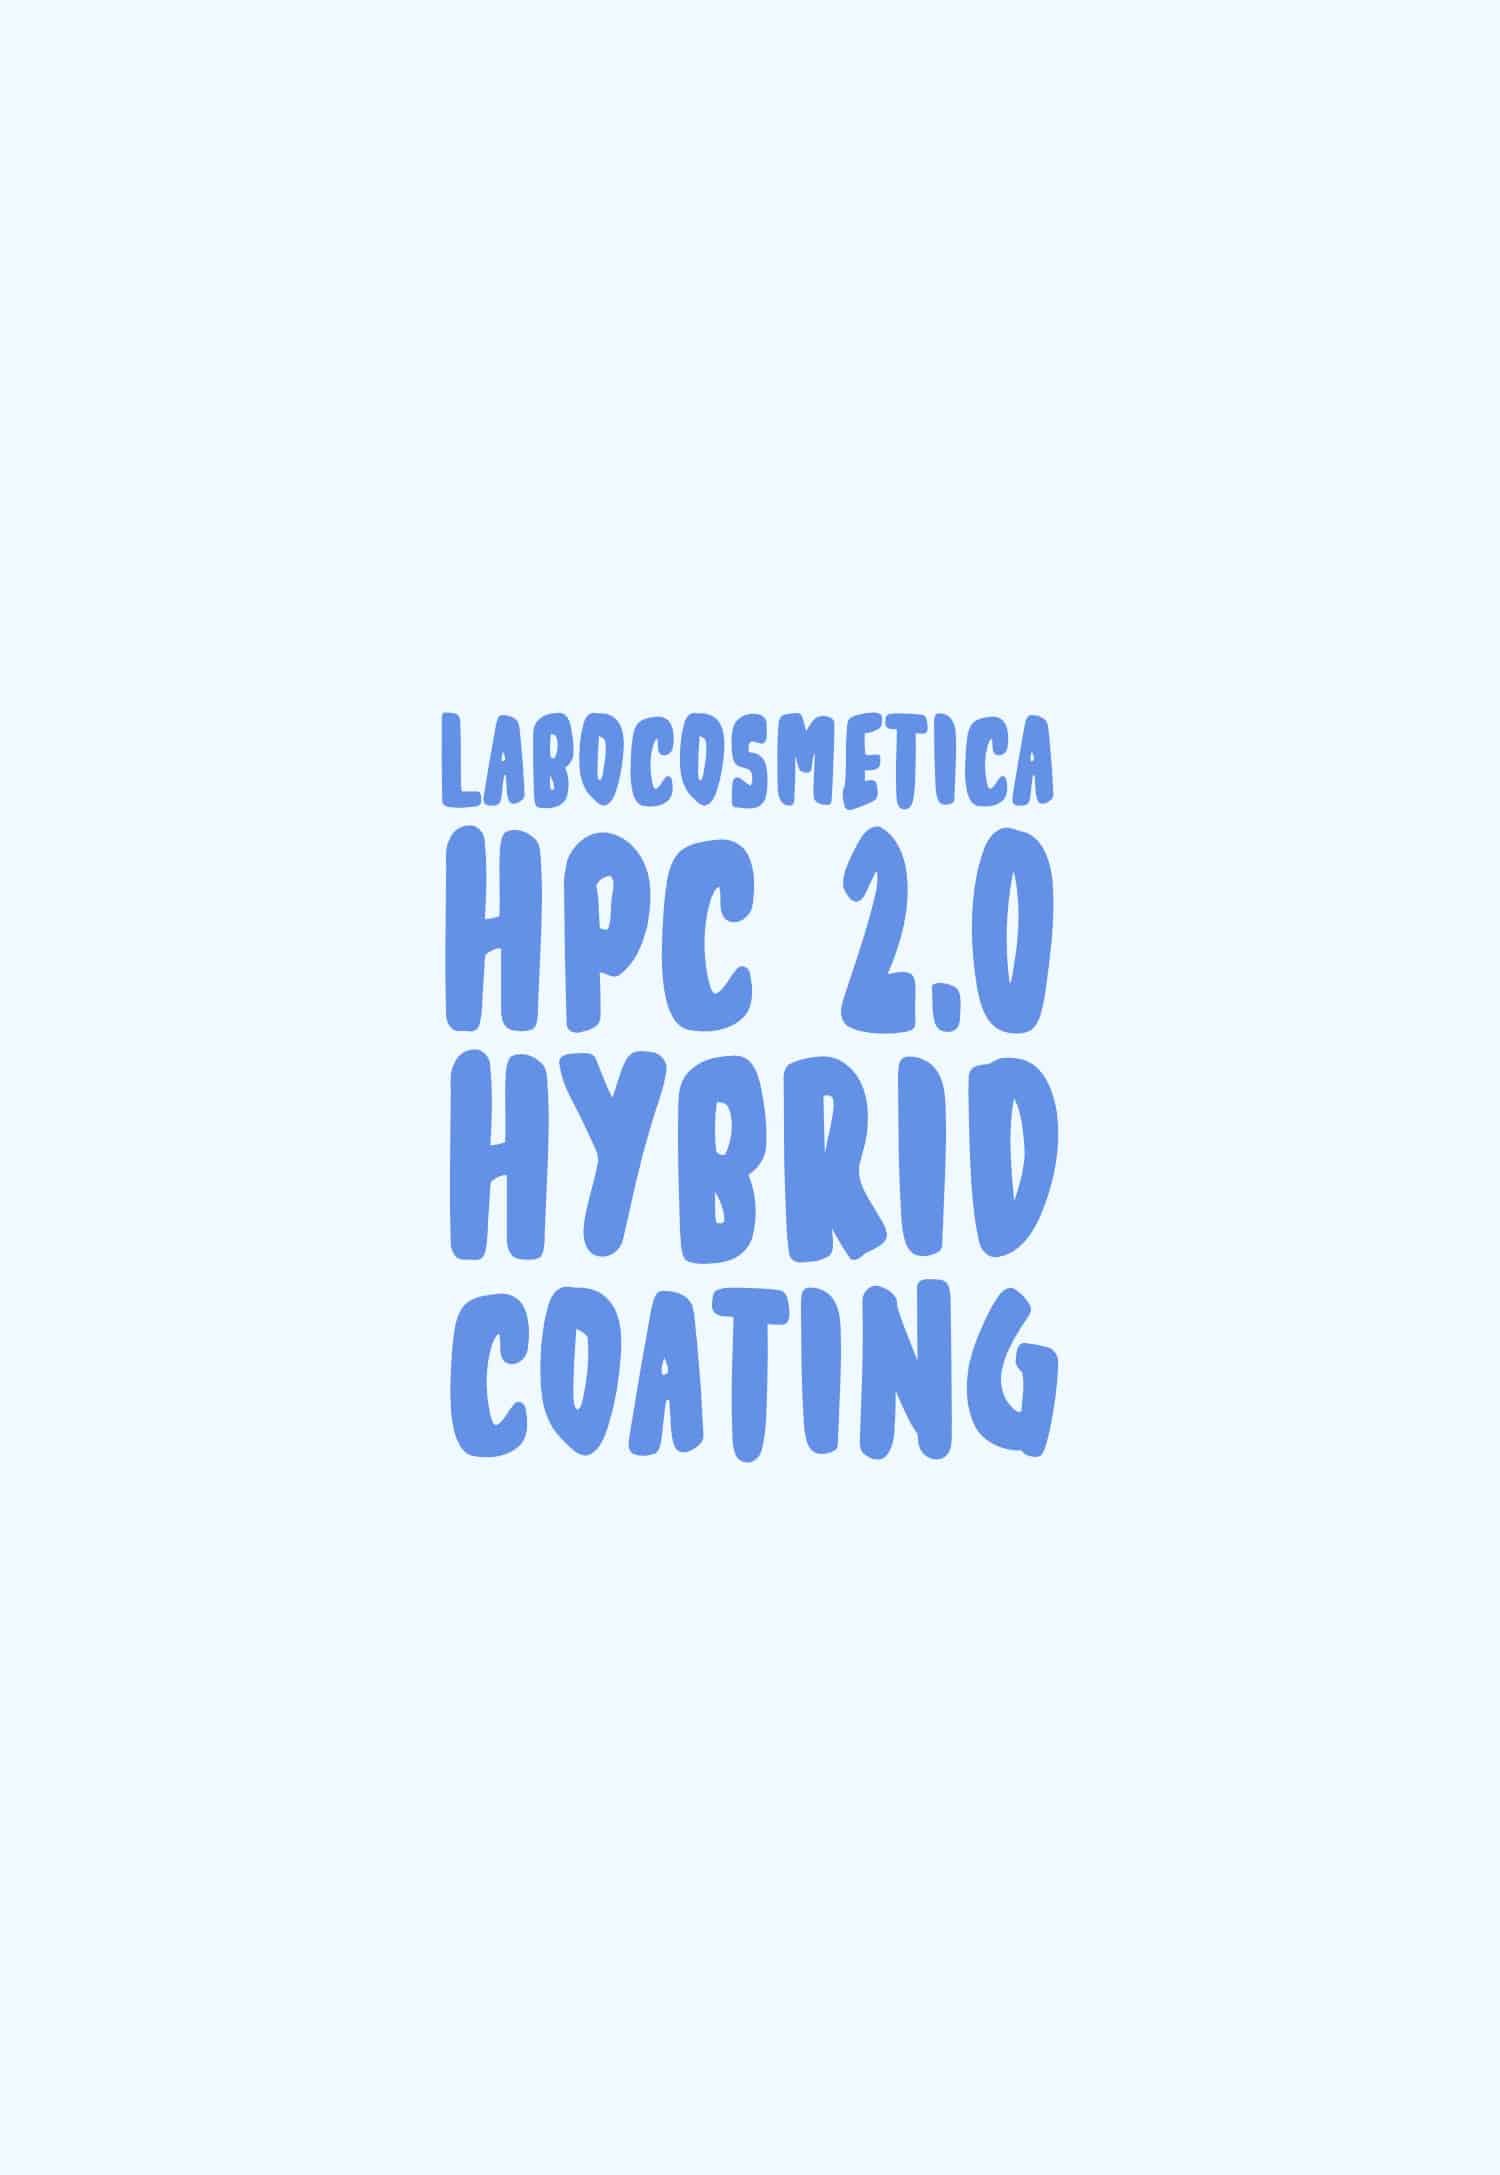 Labocosmetica HPC 2.0 Banner